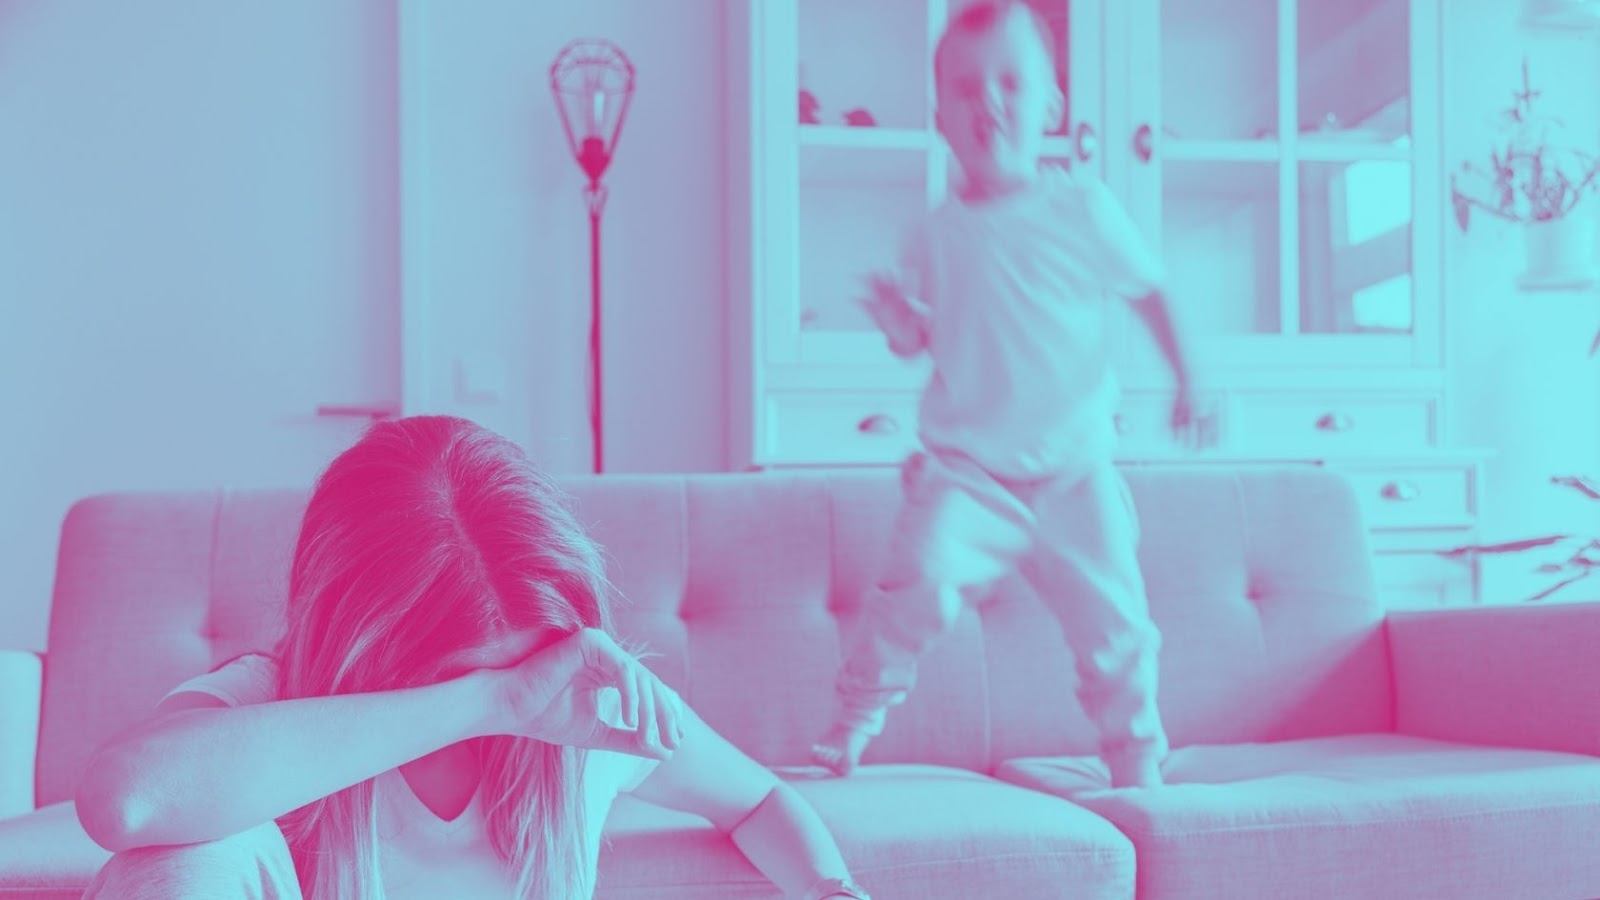 Fotografia colorida com filtro bicolor rosa e azul, mostrando um menino de 5 anos pulando ativamente no sofá, com sua imagem borrada pelo movimento, e uma mulher branca, de cabelos loiros, cobrindo o rosto em posição de desânimo, sentada na frente do sofá. Ao fundo, está uma estante de madeira branca e vidro